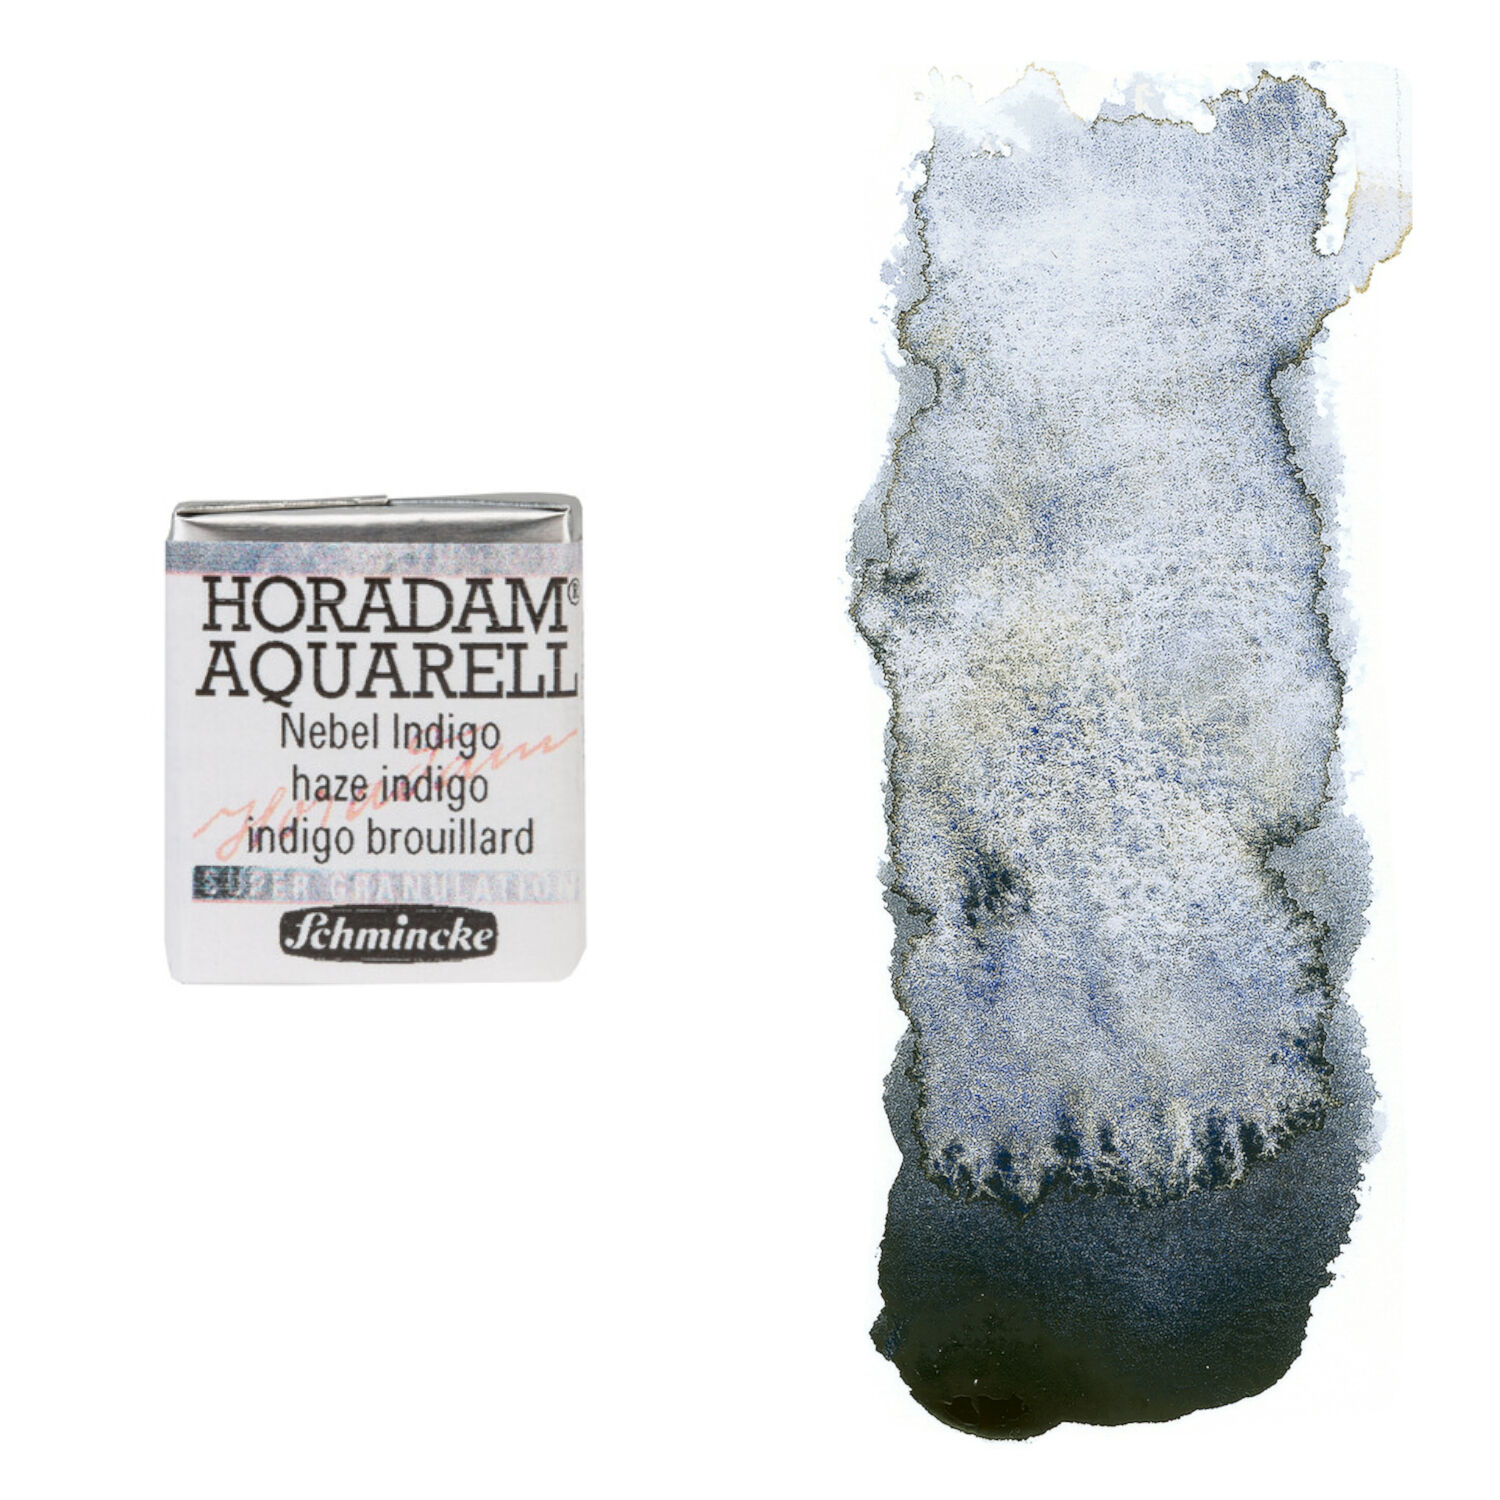 NEU Horadam Aquarell Super Granulation, 1/2 Npfchen, Nebel Indigo